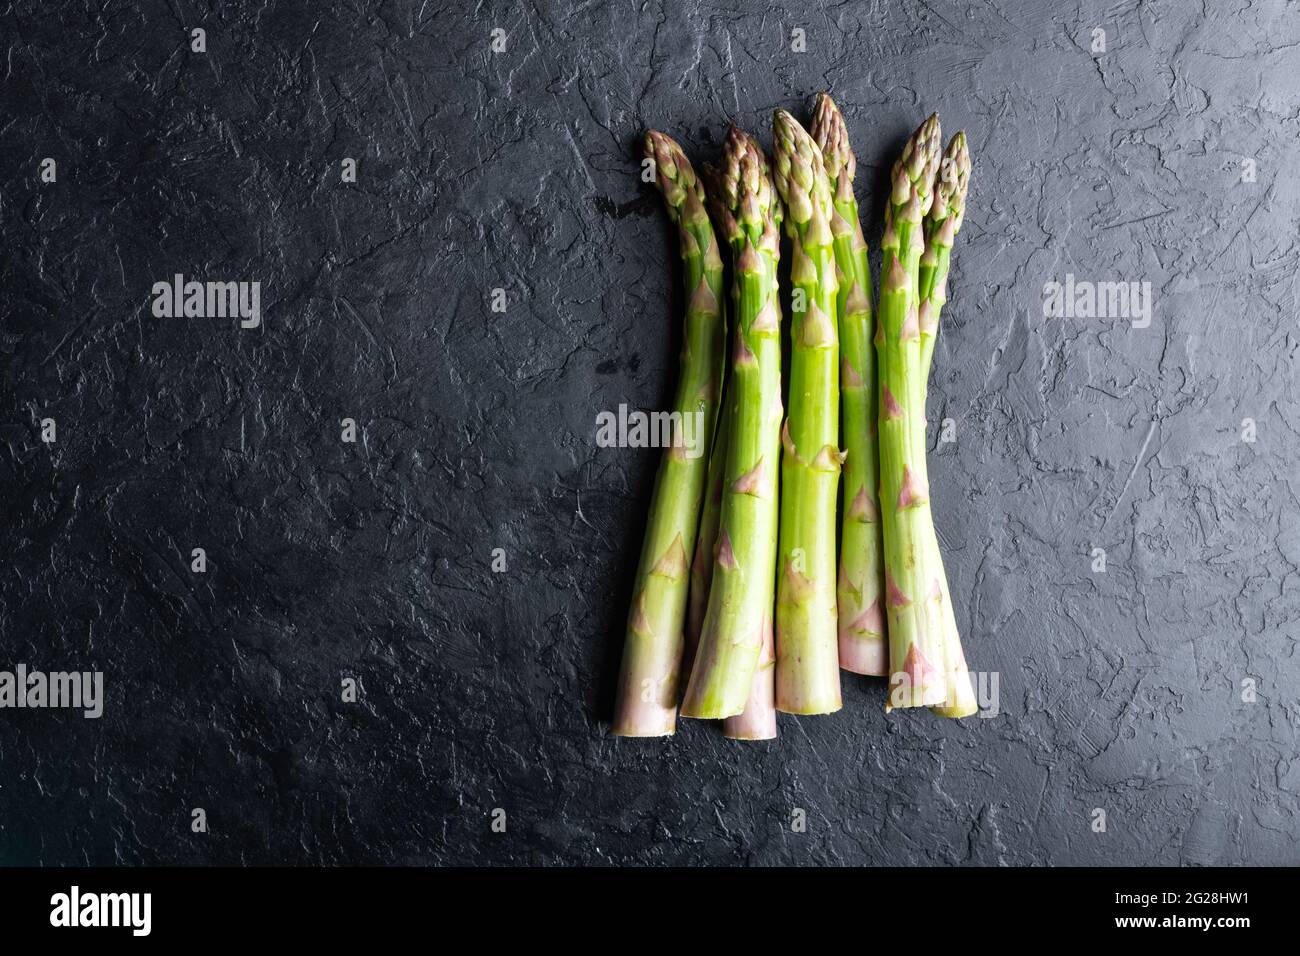 Germogli di asparagi verdi su tavola nera vista dall'alto piatto. Fotografia alimentare Foto Stock